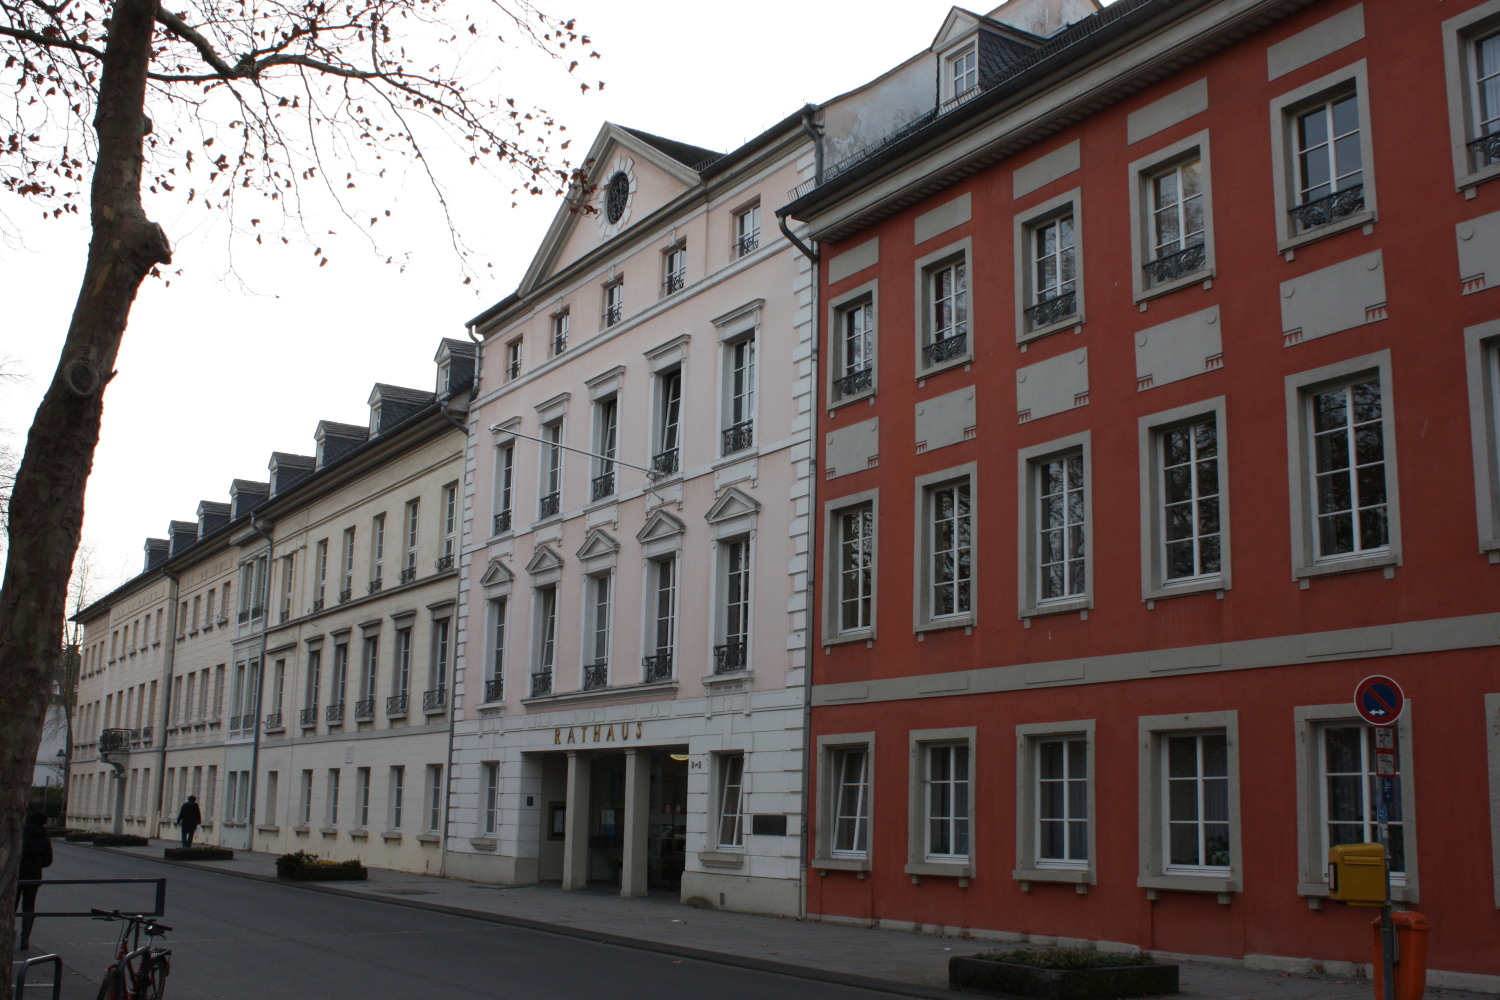 Kurfürstliche Zeile Rathaus Bad Godesberg